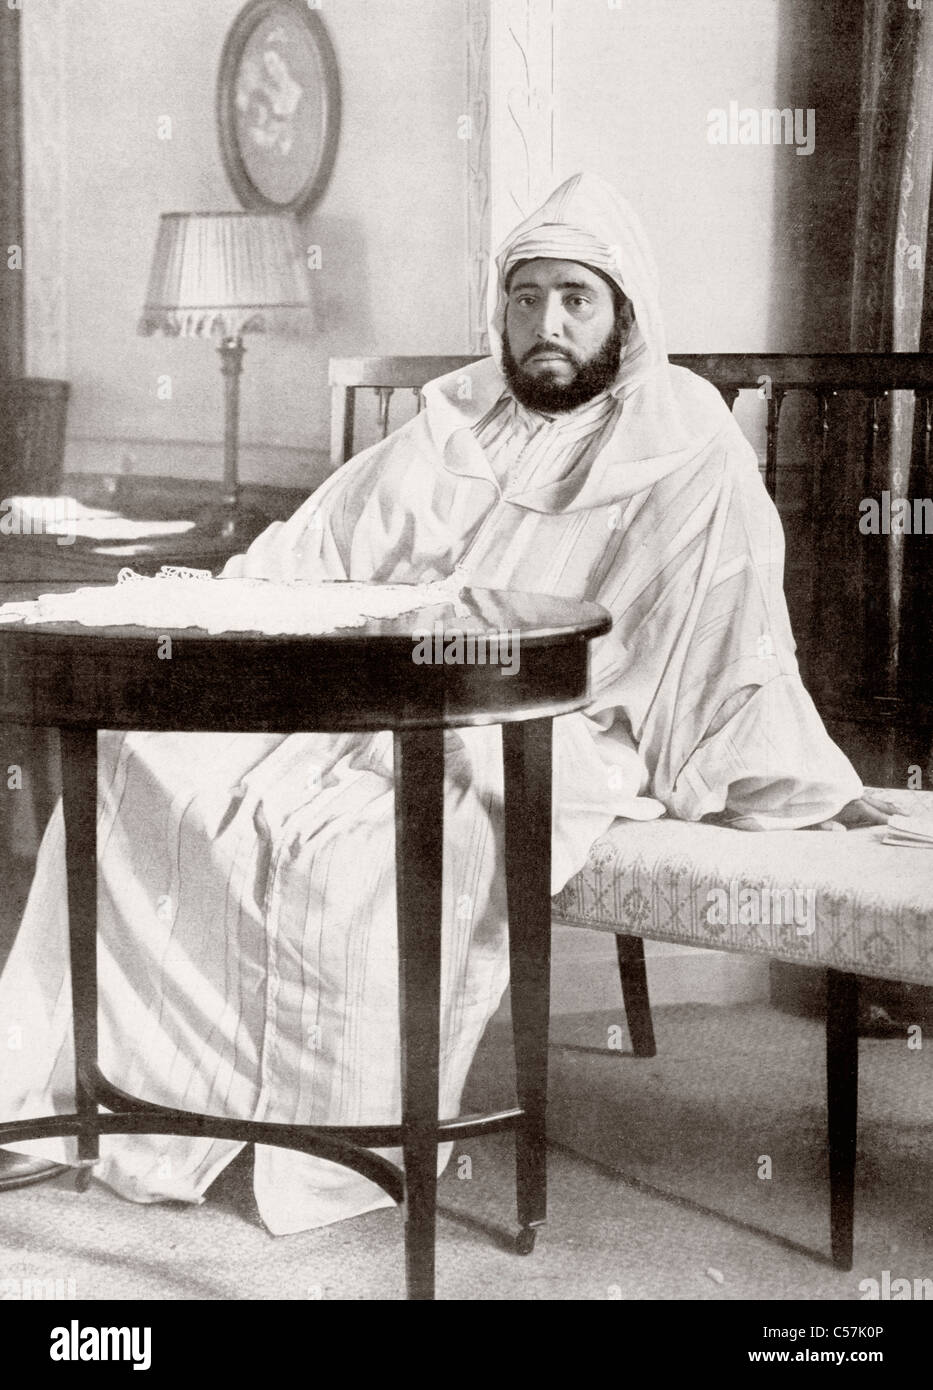 Abdelhafid del Marocco (o Mulai Abd al-Hafiz), 1873 - 1937. Il sultano del Marocco dal 1908 al 1912, come membro della dinastia Alaouite. Foto Stock